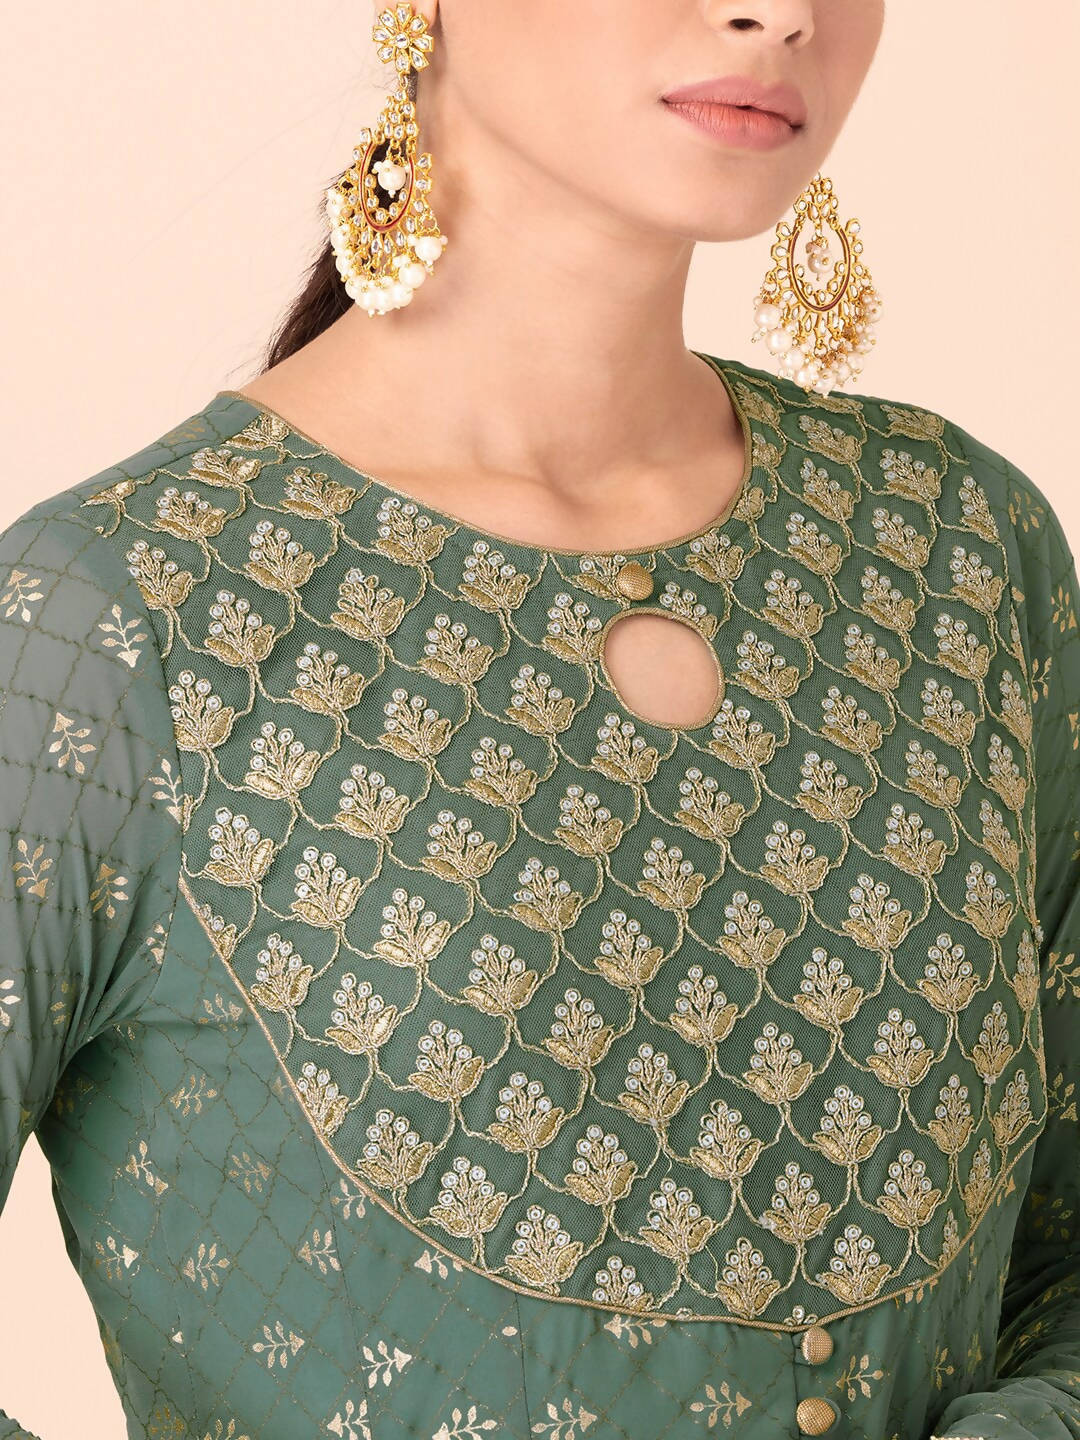 Buy Ethnic Wear for Women Online in India - Westside